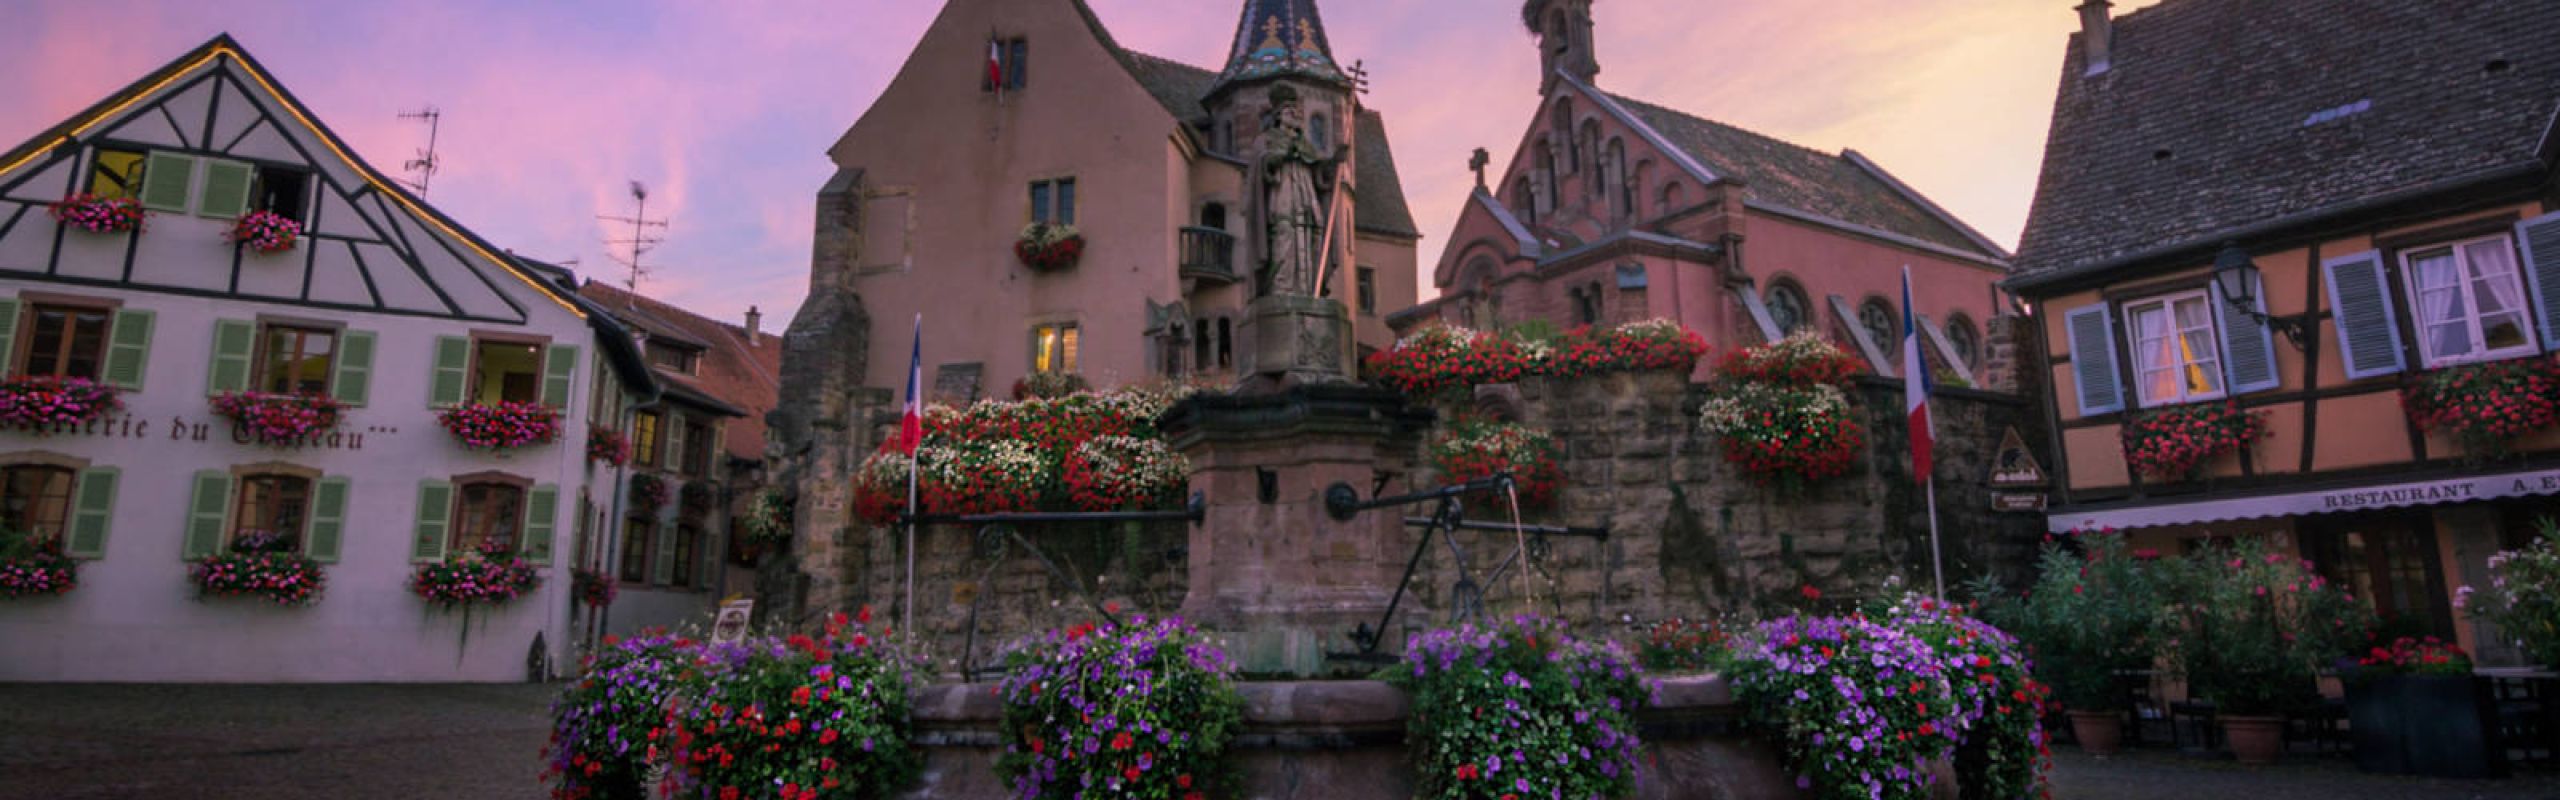 Domaine Théo Meyer, Ammerschwihr, Alsace - vacances et tourisme en Alsace